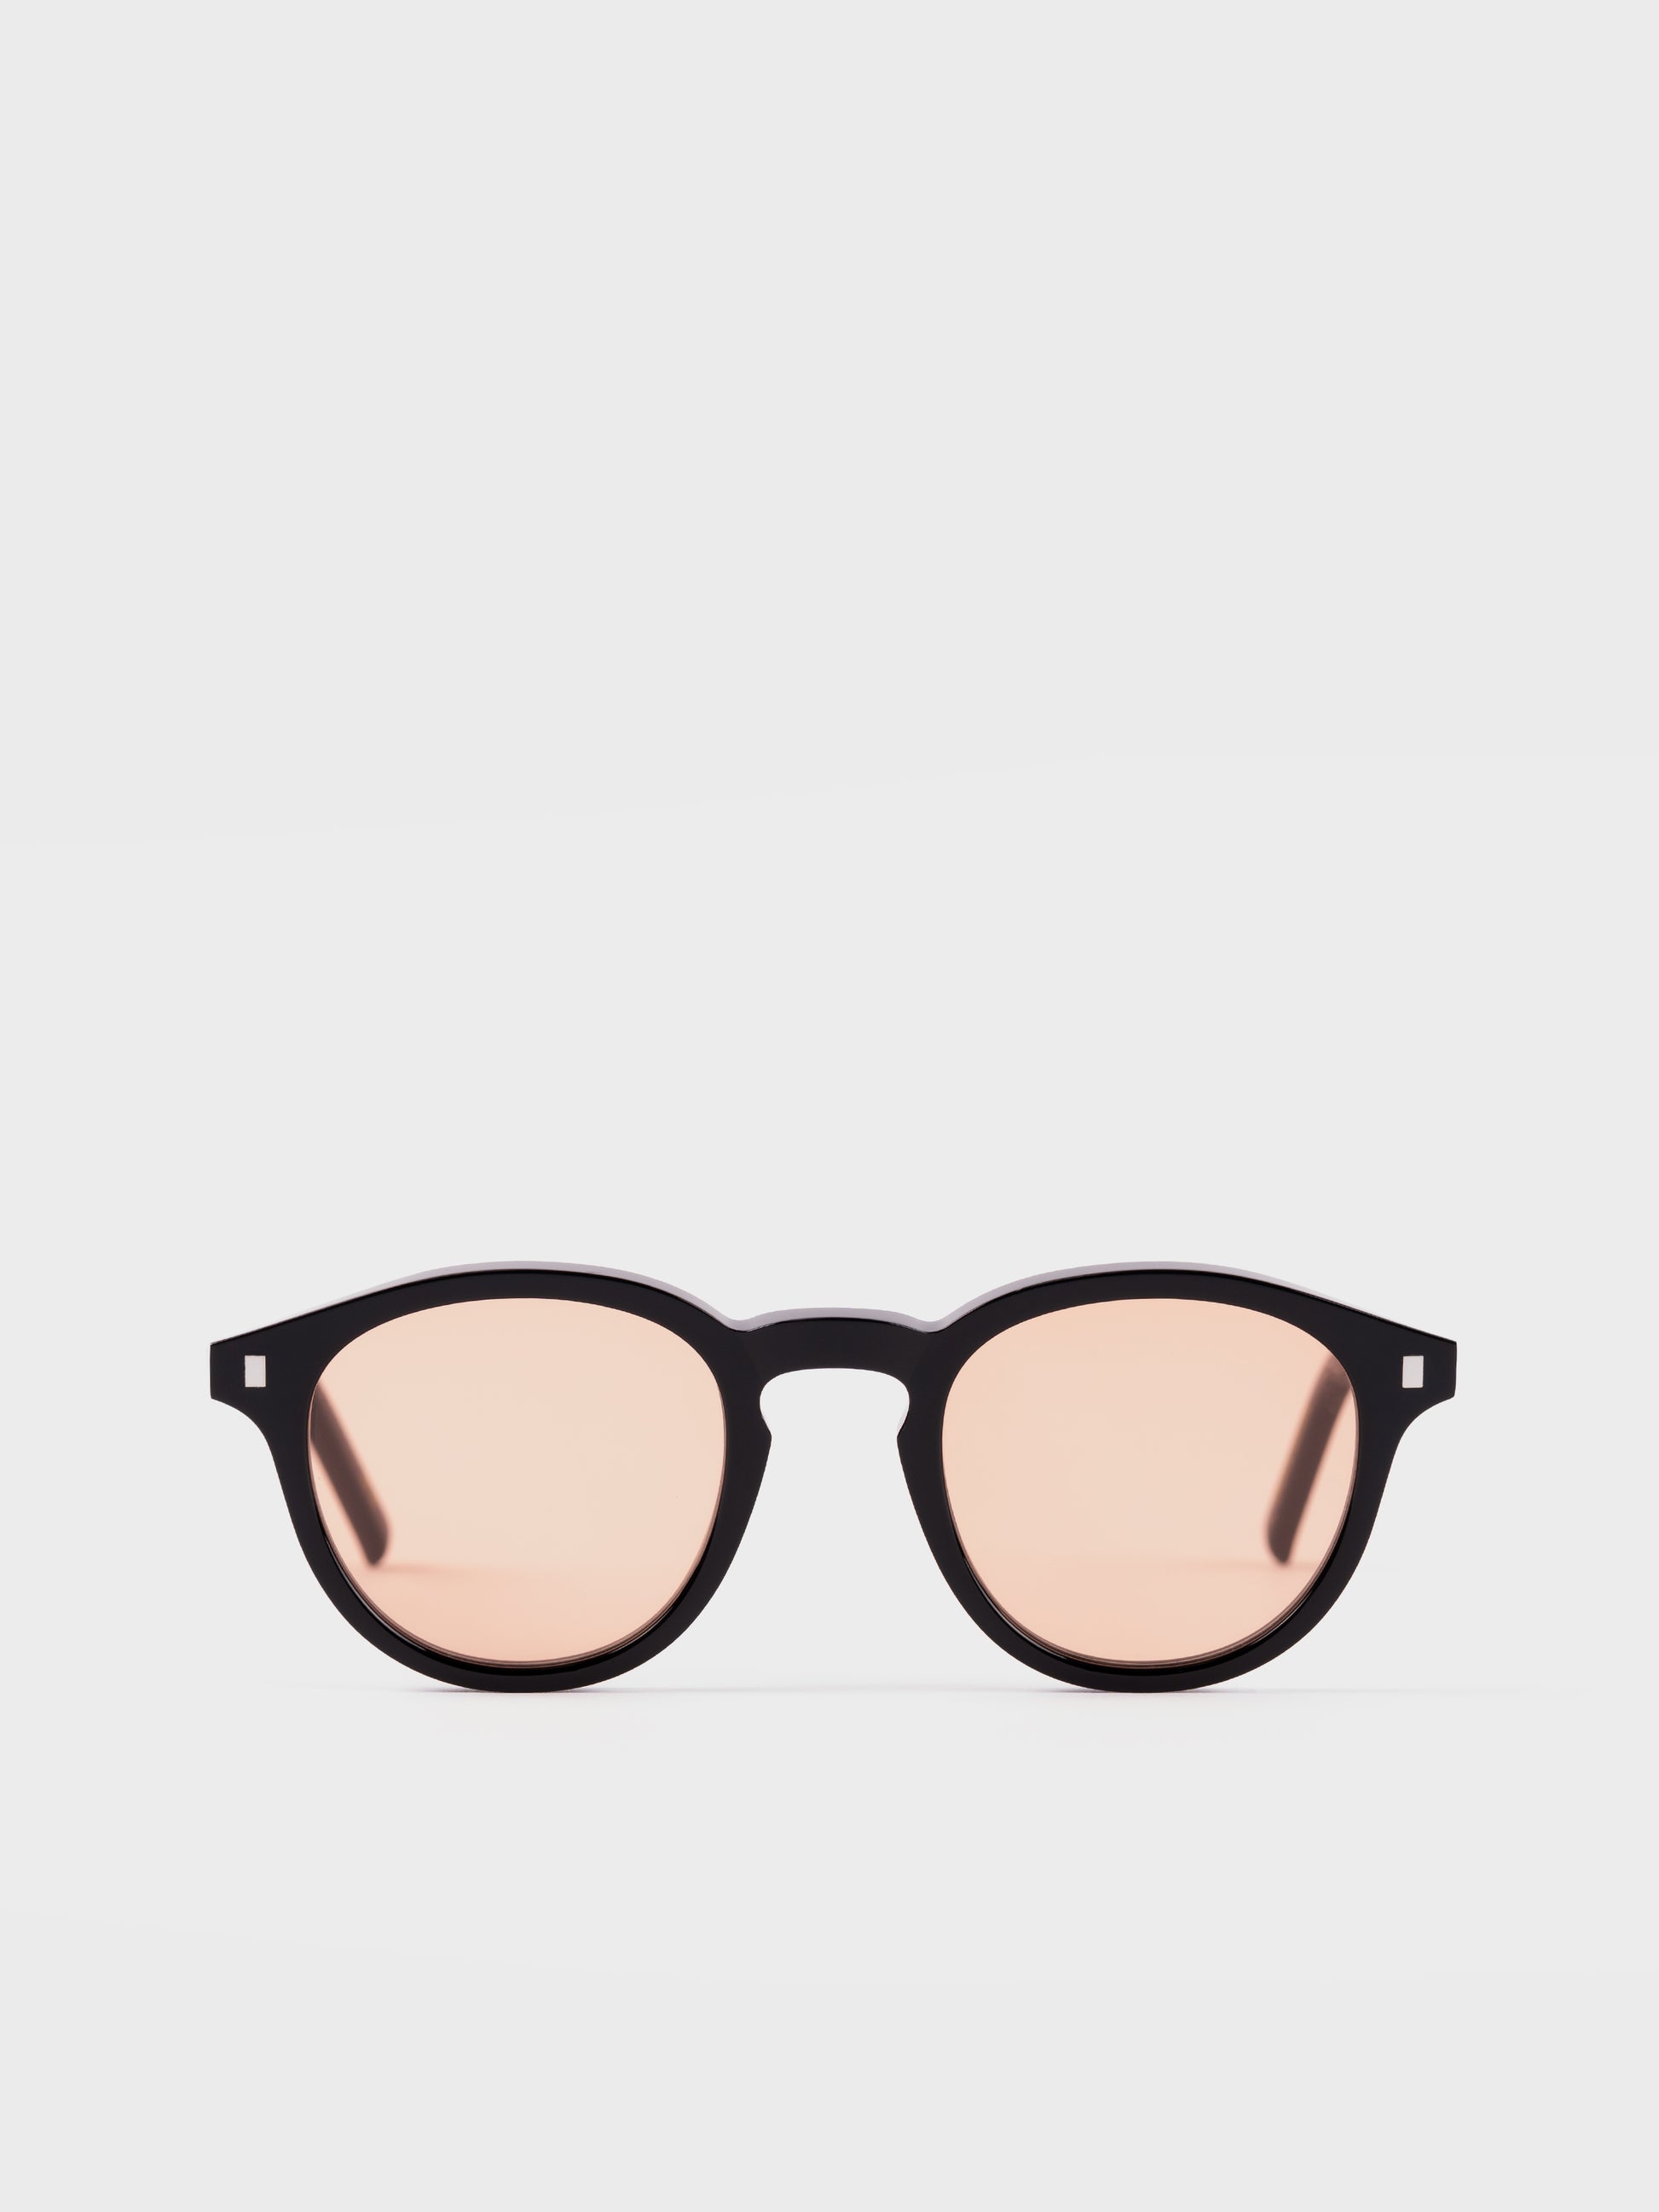 Monokel Sunglasses - Nelson Black/Orange Lens